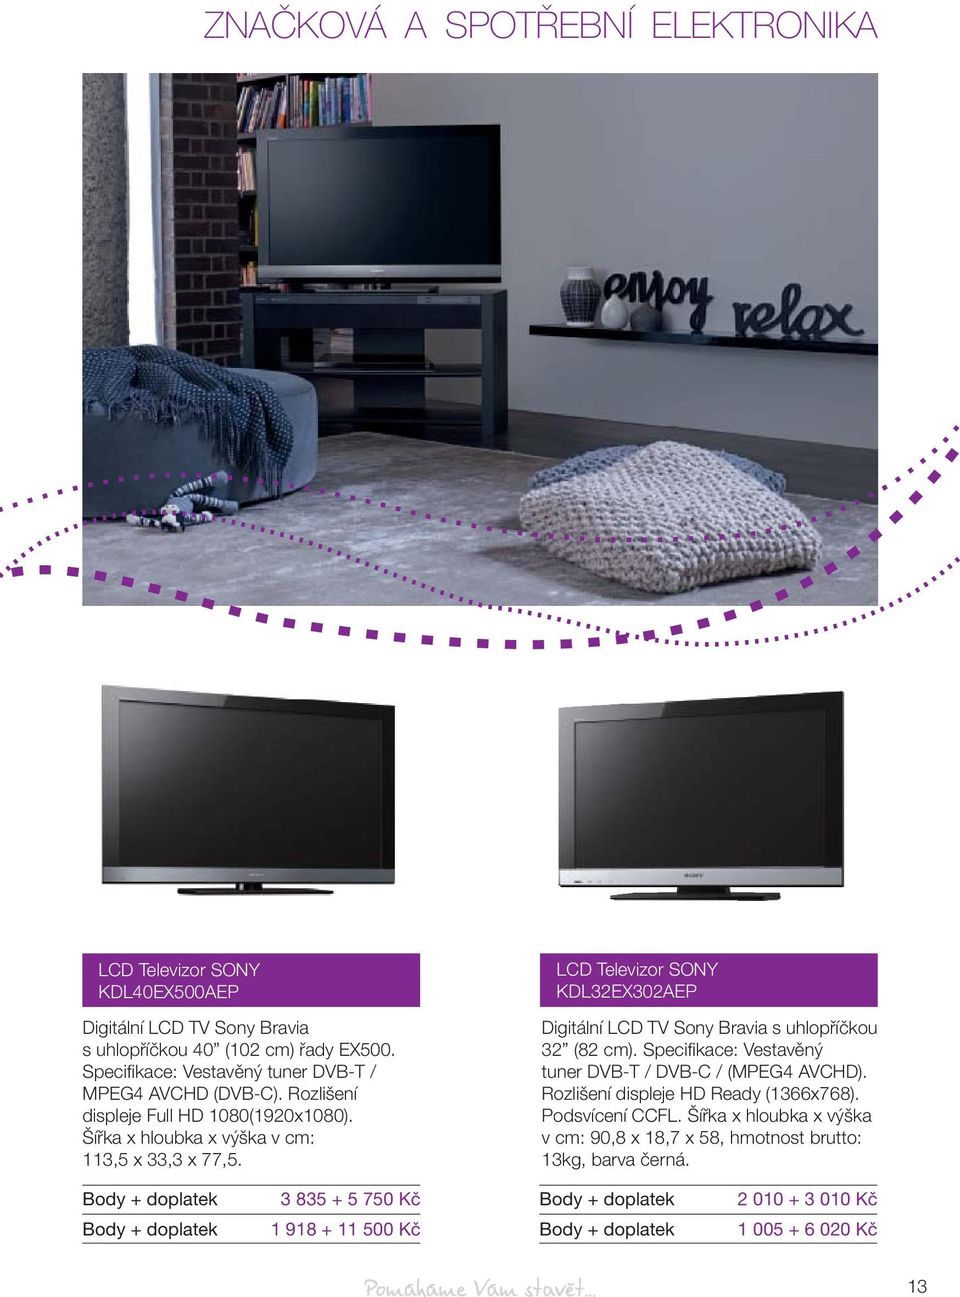 LCD Televizor SONY KDL32EX302AEP Digitální LCD TV Sony Bravia s uhlopříčkou 32 (82 cm). Specifi kace: Vestavěný tuner DVB-T / DVB-C / (MPEG4 AVCHD).